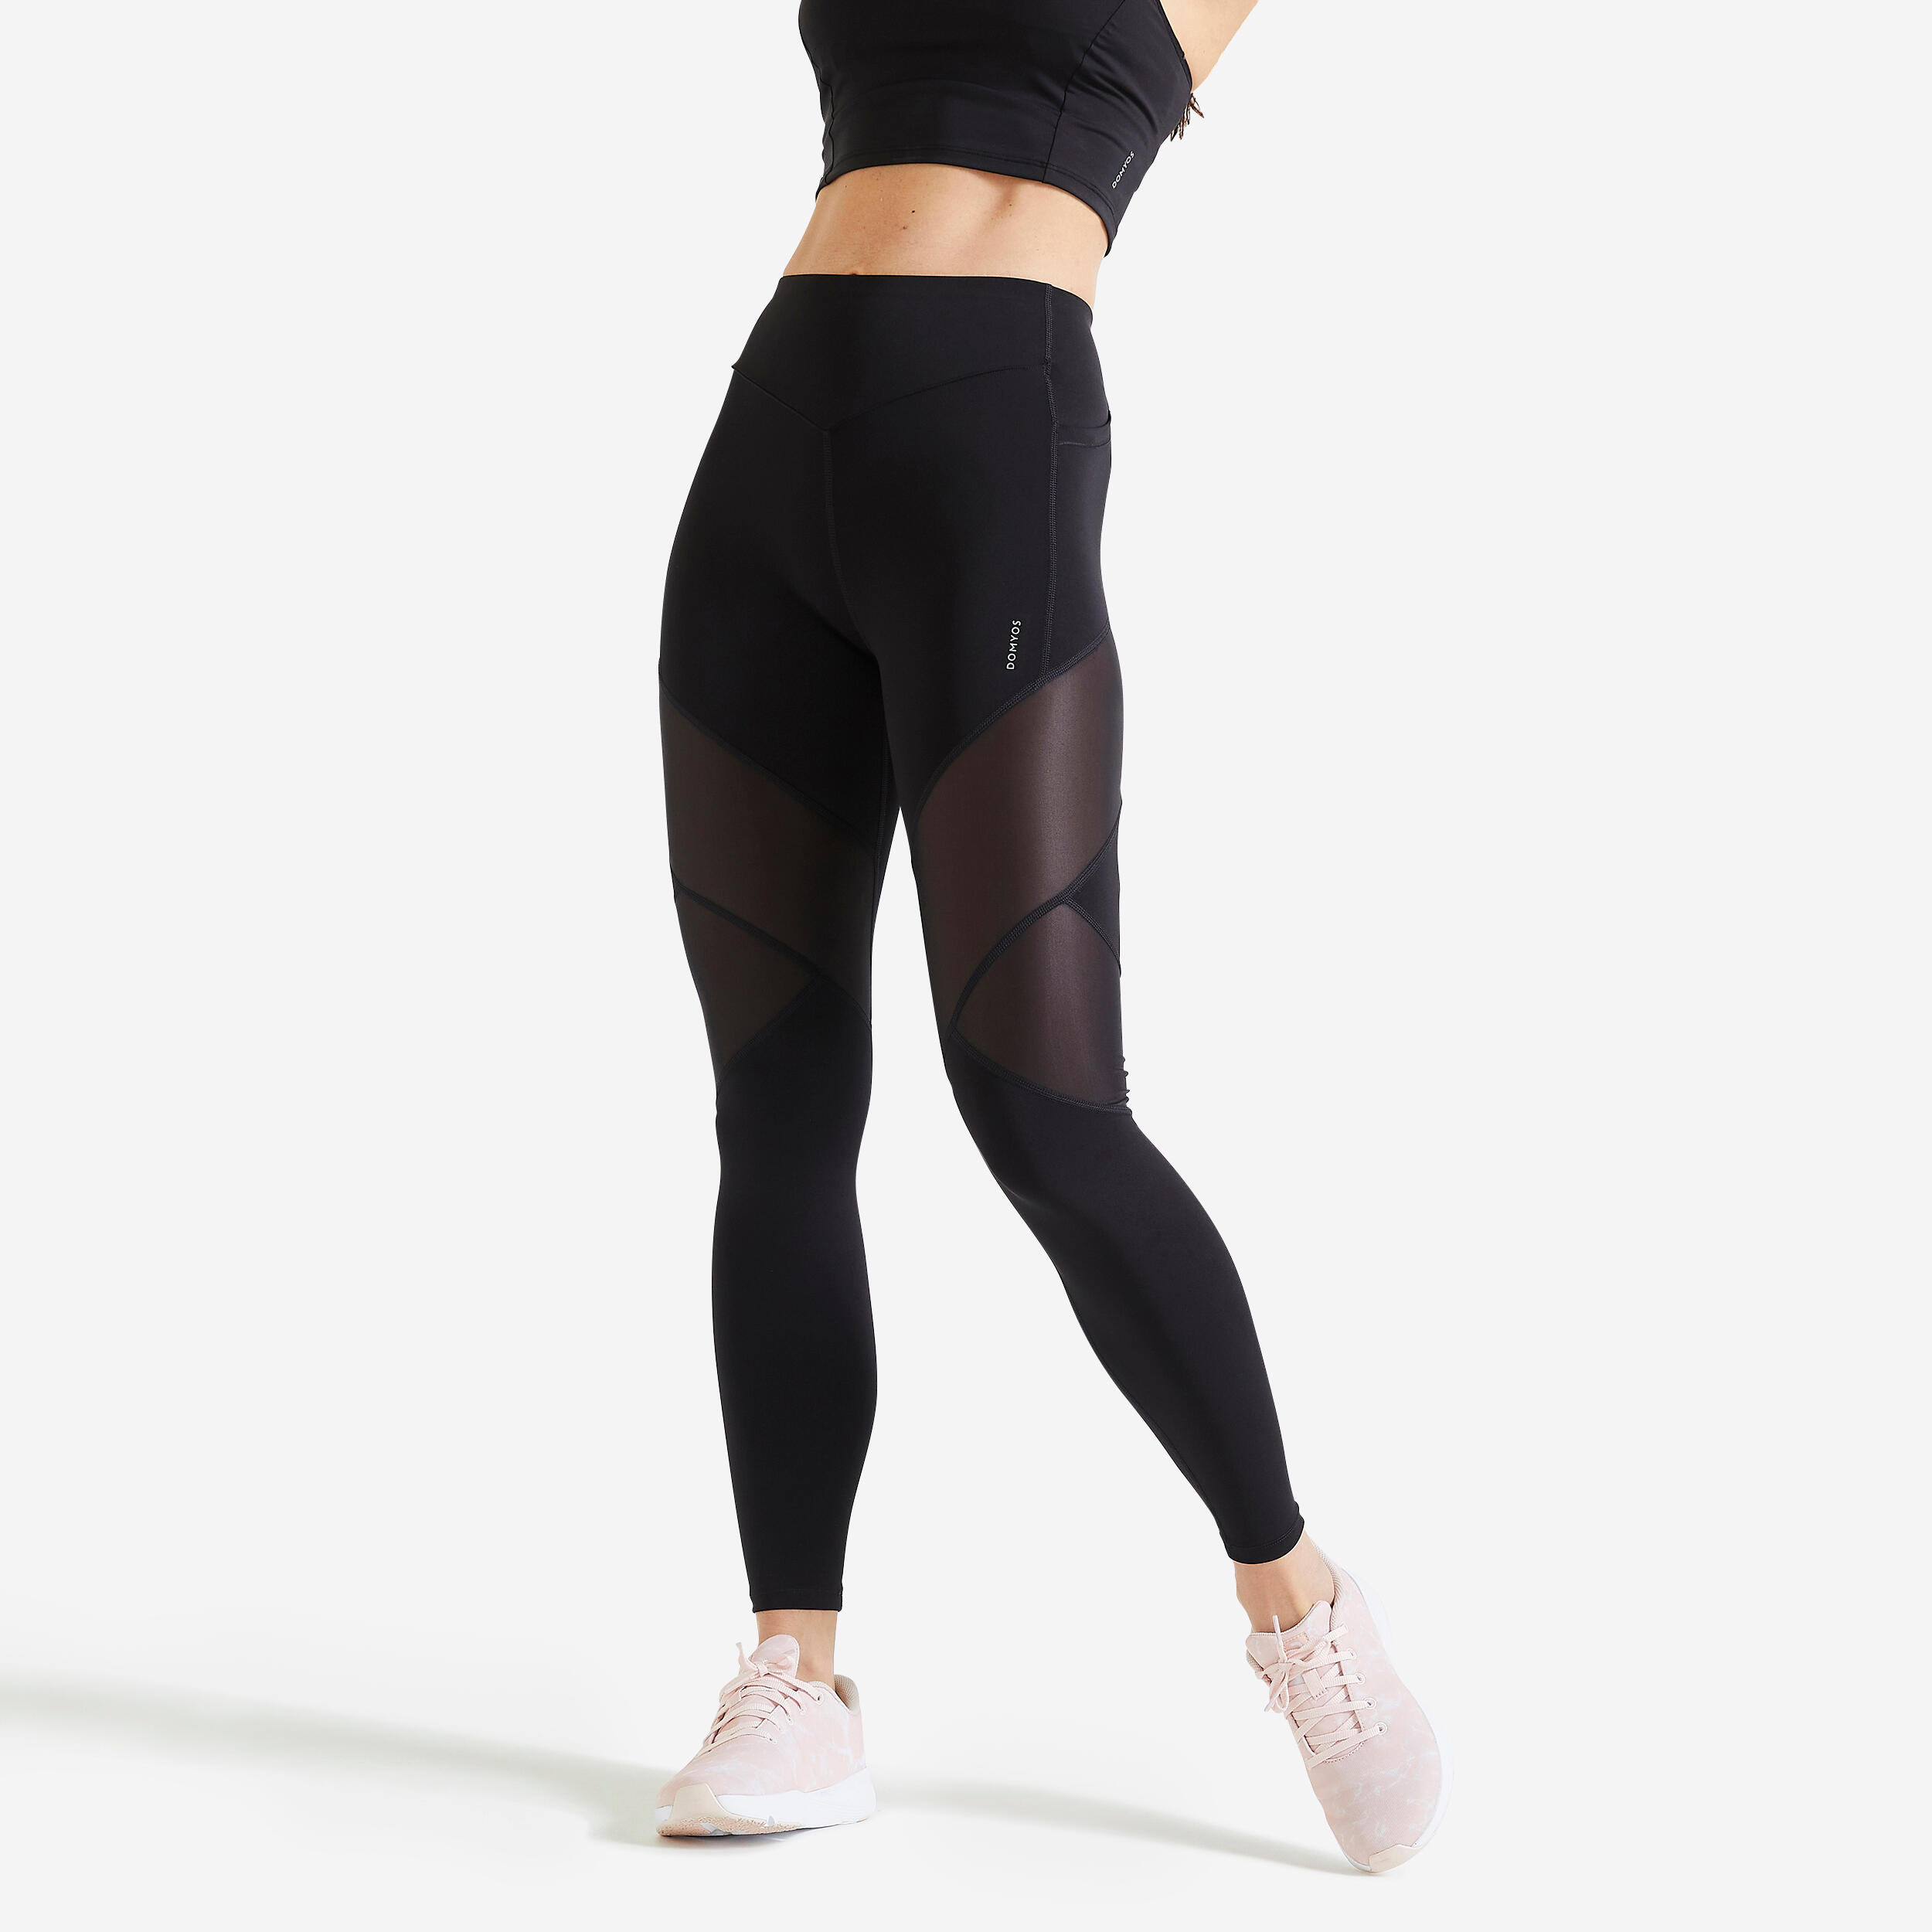 pantalon short femme legging yoga sport fitness footing running taille  haute